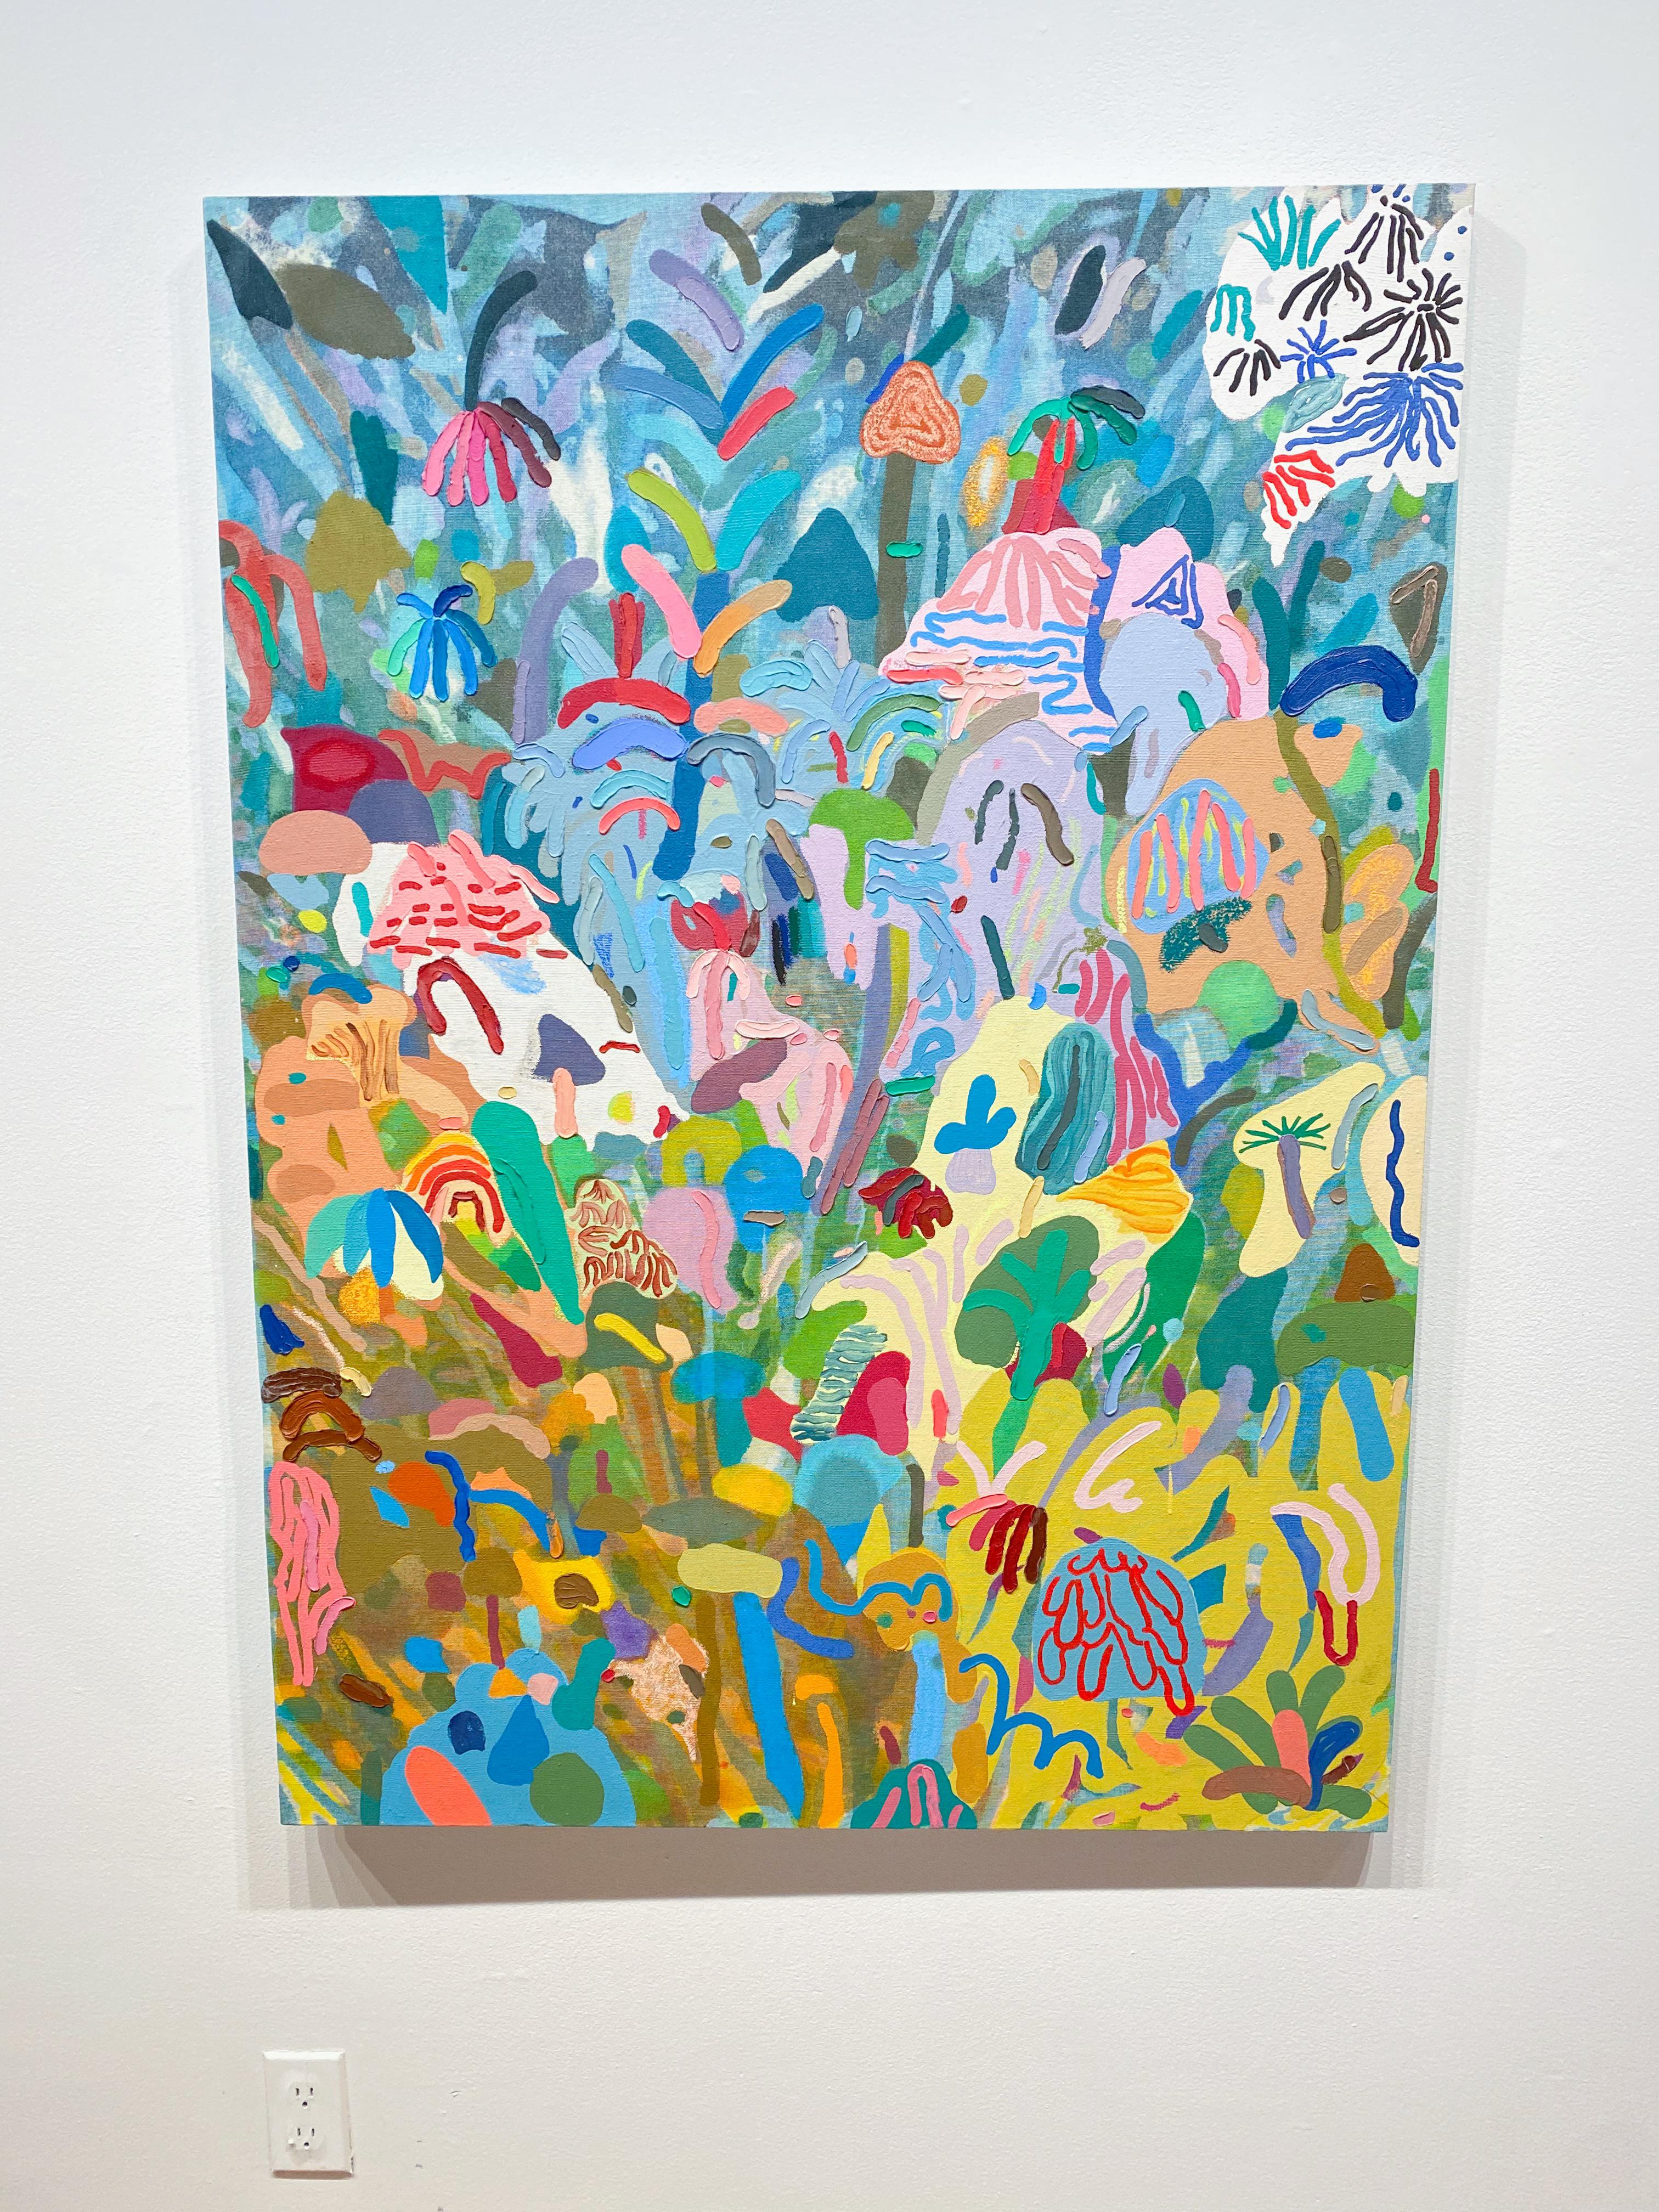 Pour sa première exposition solo à la galerie David B. Smith, Leon Benn inonde la galerie principale de peintures à grande échelle aux couleurs vibrantes et aux observations hallucinatoires de macro et micro-environnements. Inspiré par sa relation